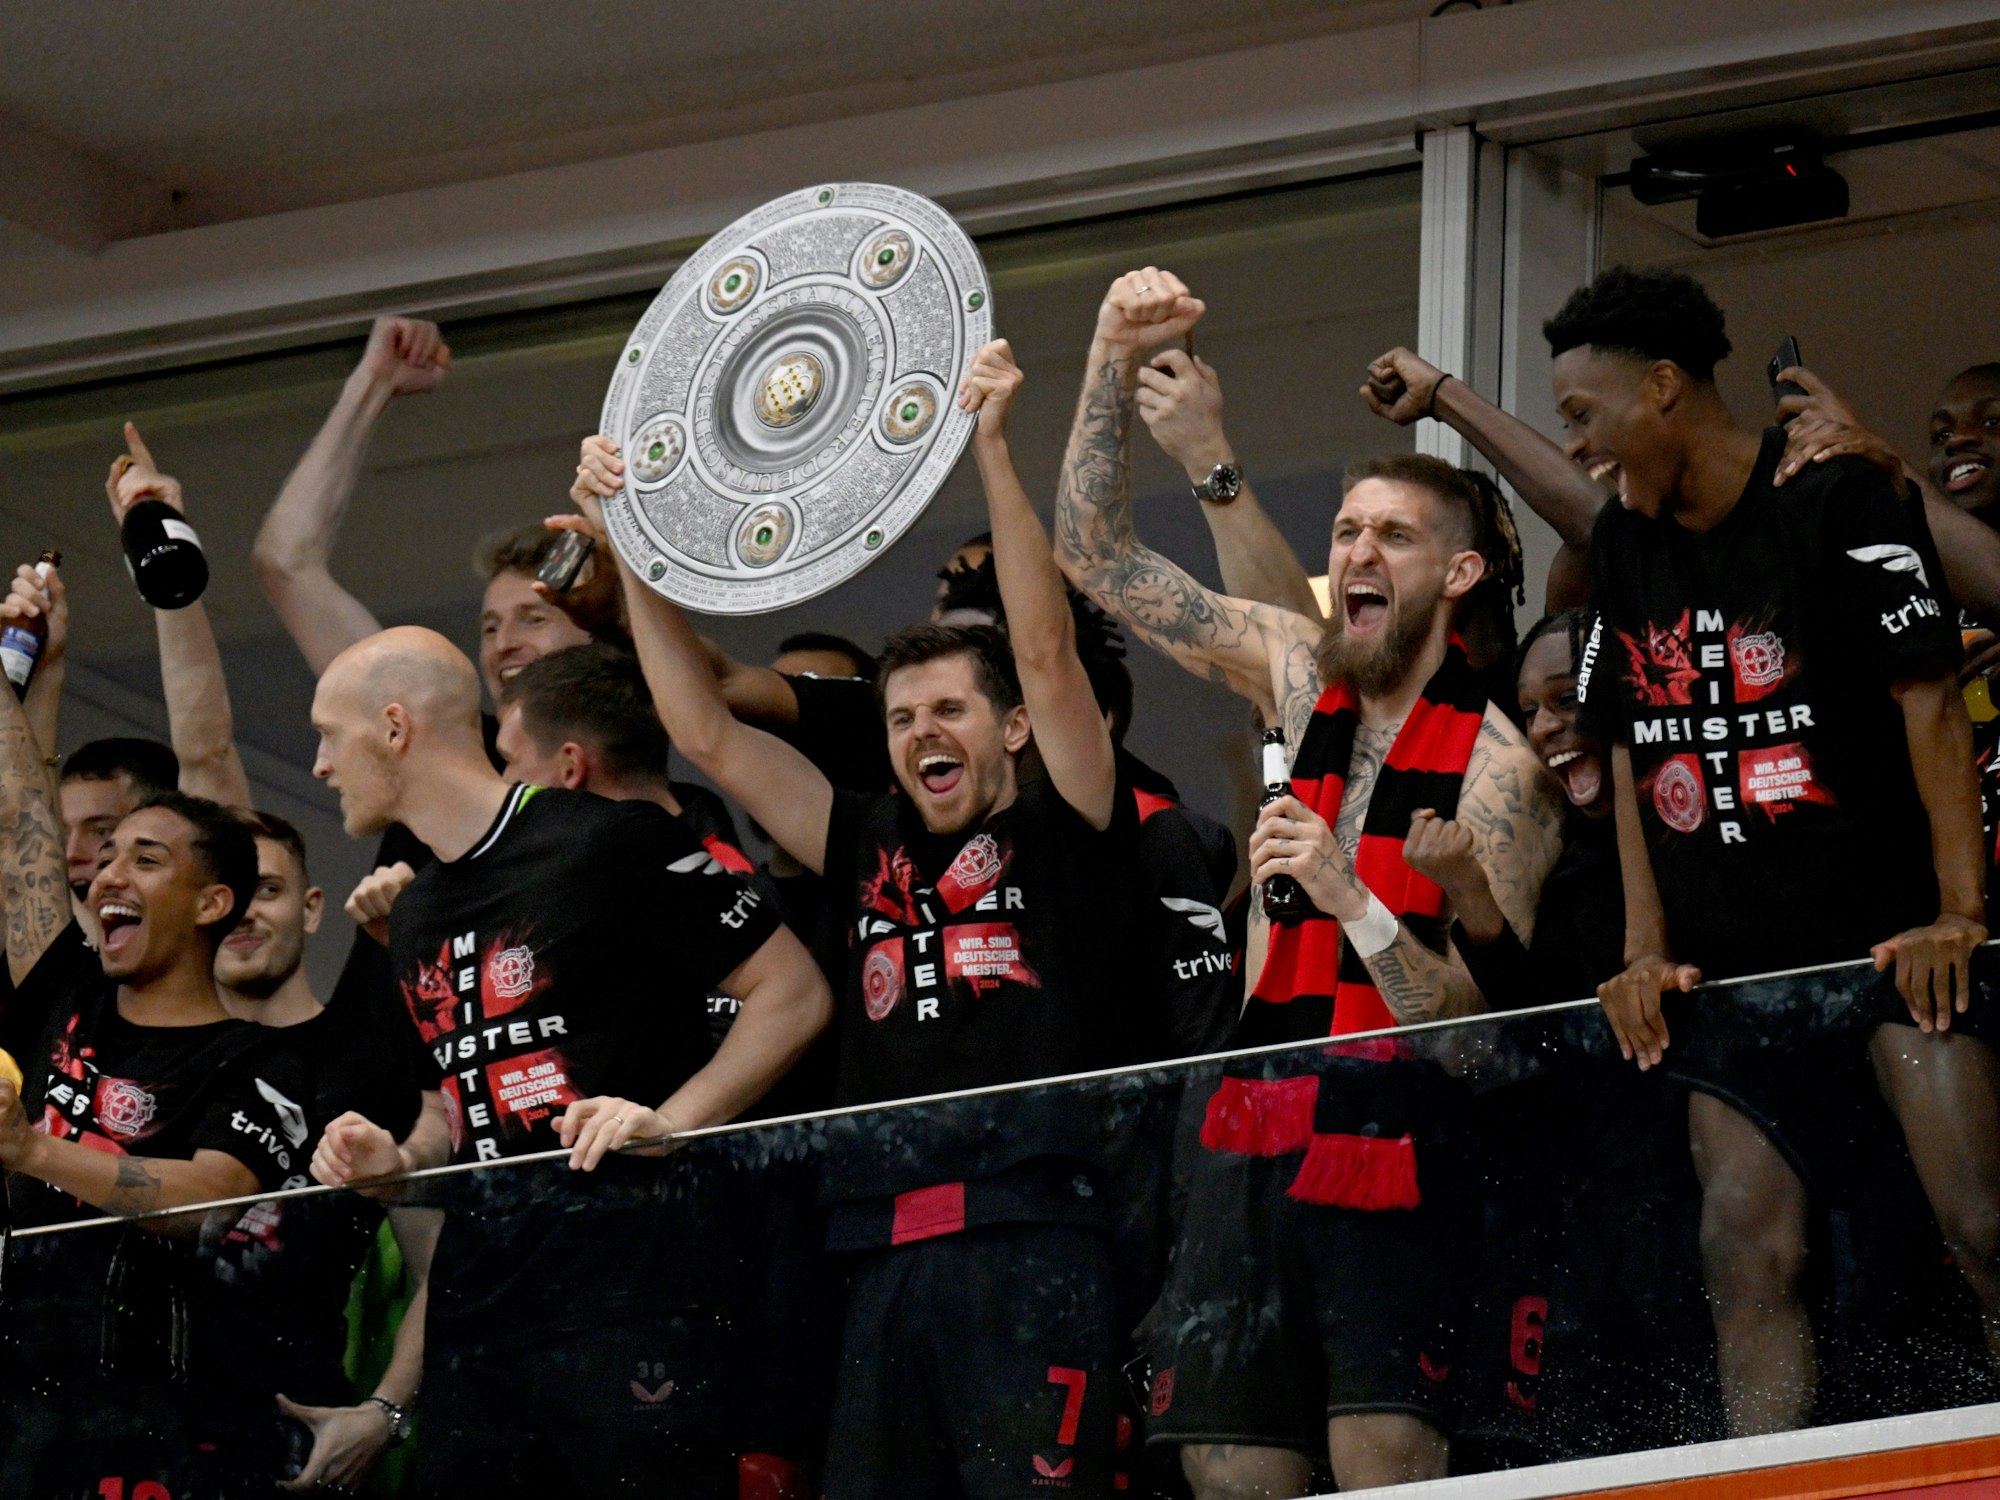 Die Leverkusener Mannschaft ließ sich dann auf der Tribüne blicken, brachte eine Meisterschale aus Pappe mit und feierte mit den Fans, die im Stadion-Innenraum gewartet hatten.